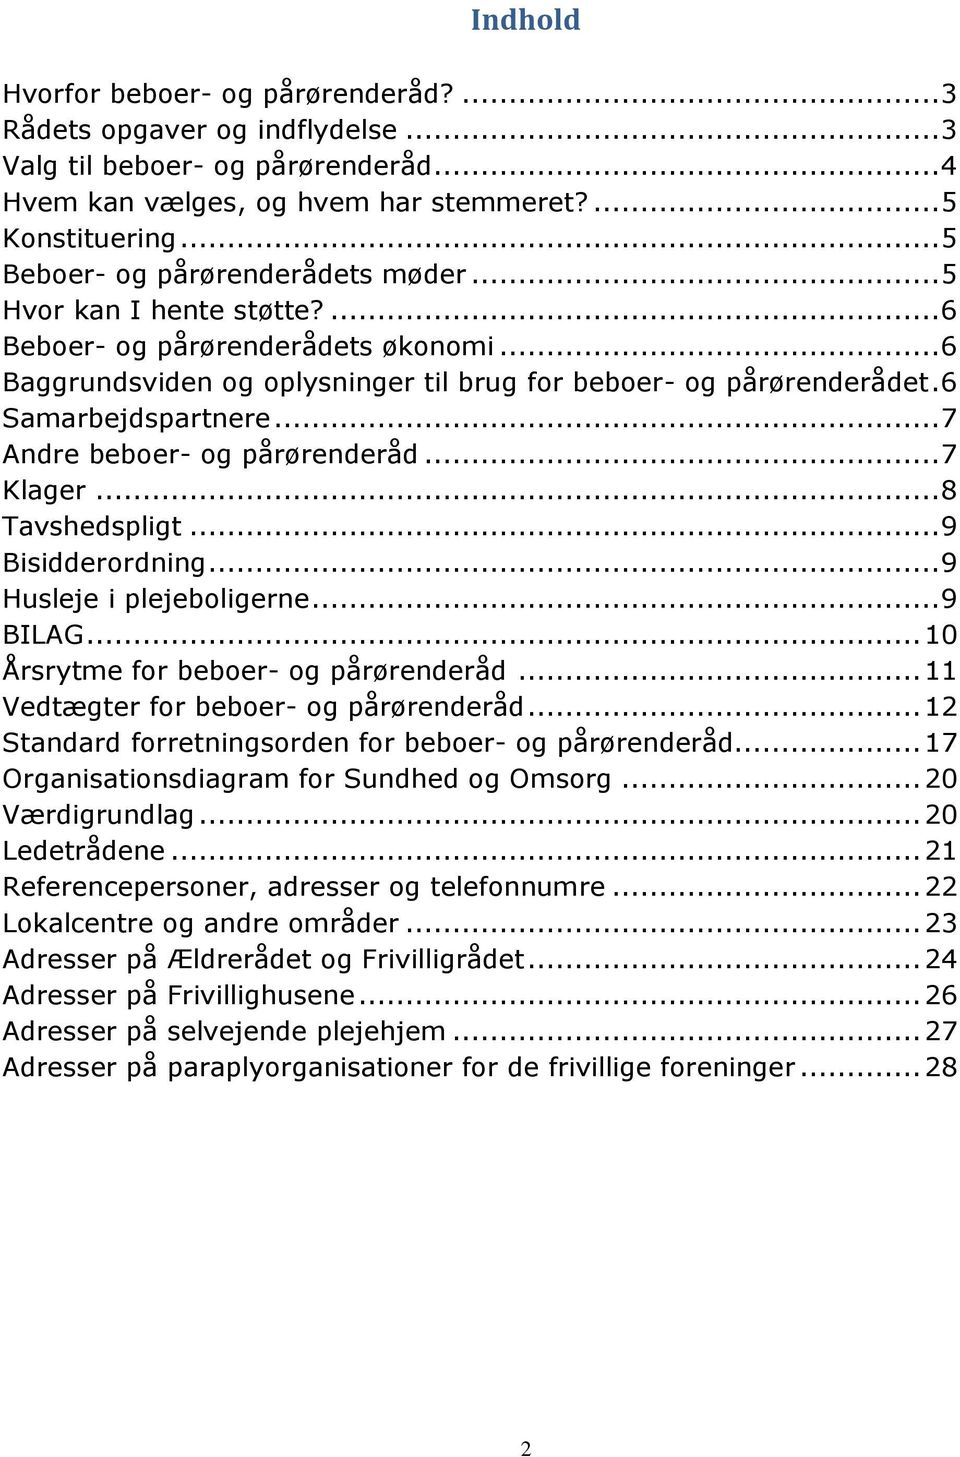 Anemone fisk Krønike Tarif Håndbog for beboerog. pårørenderåd - PDF Gratis download